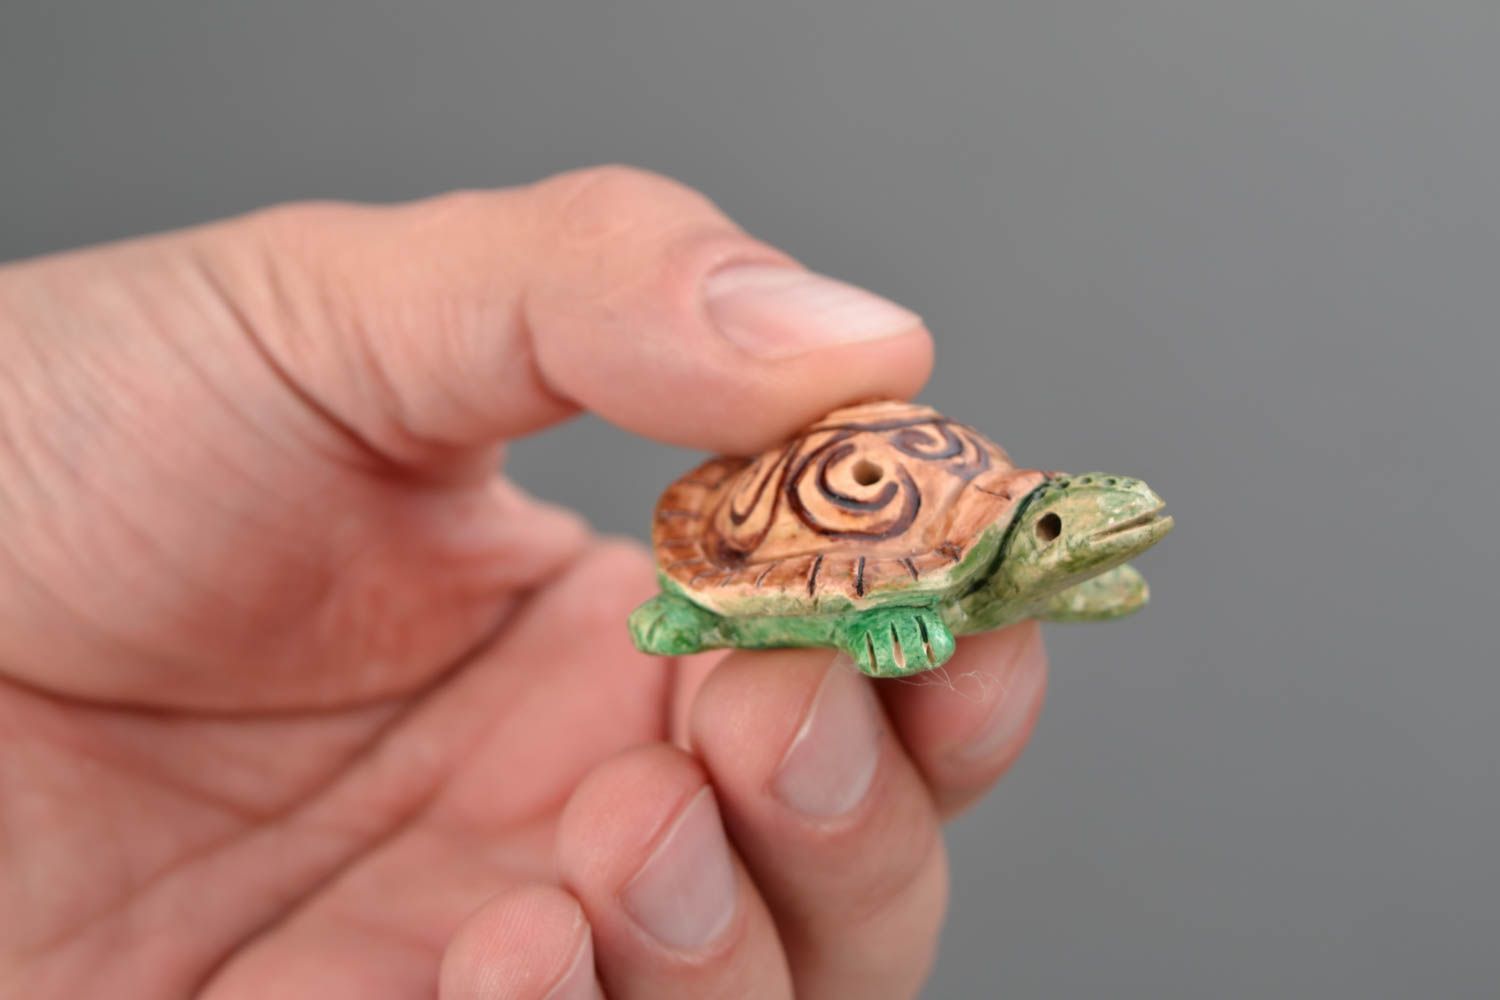 Sifflet instrument de musique en forme de tortue miniature peint original photo 2